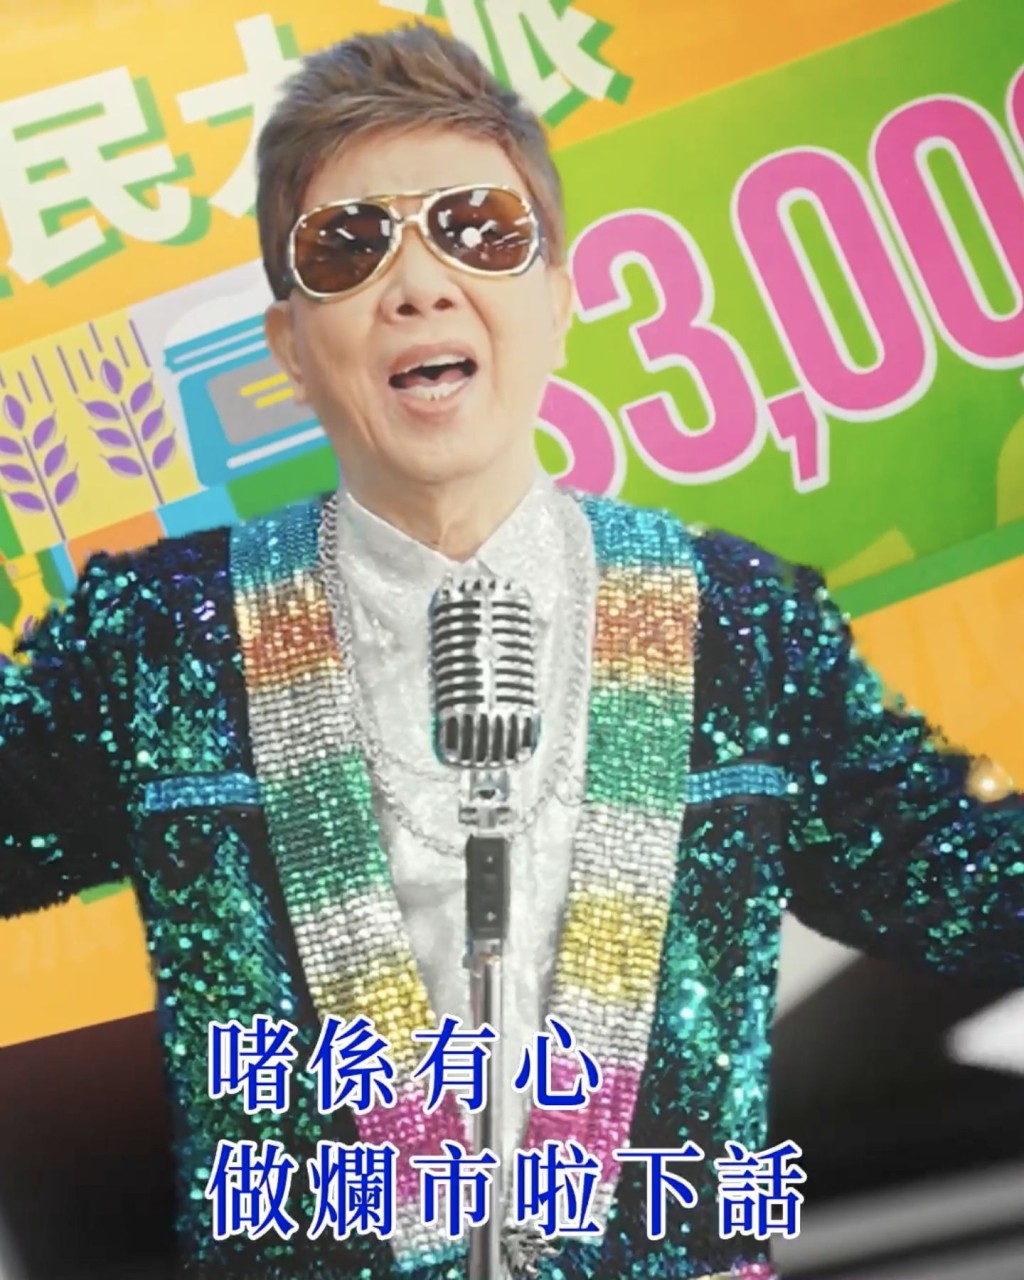 早前尹光為網上購物平台改詞唱《少理阿爸》一樣好受歡迎。